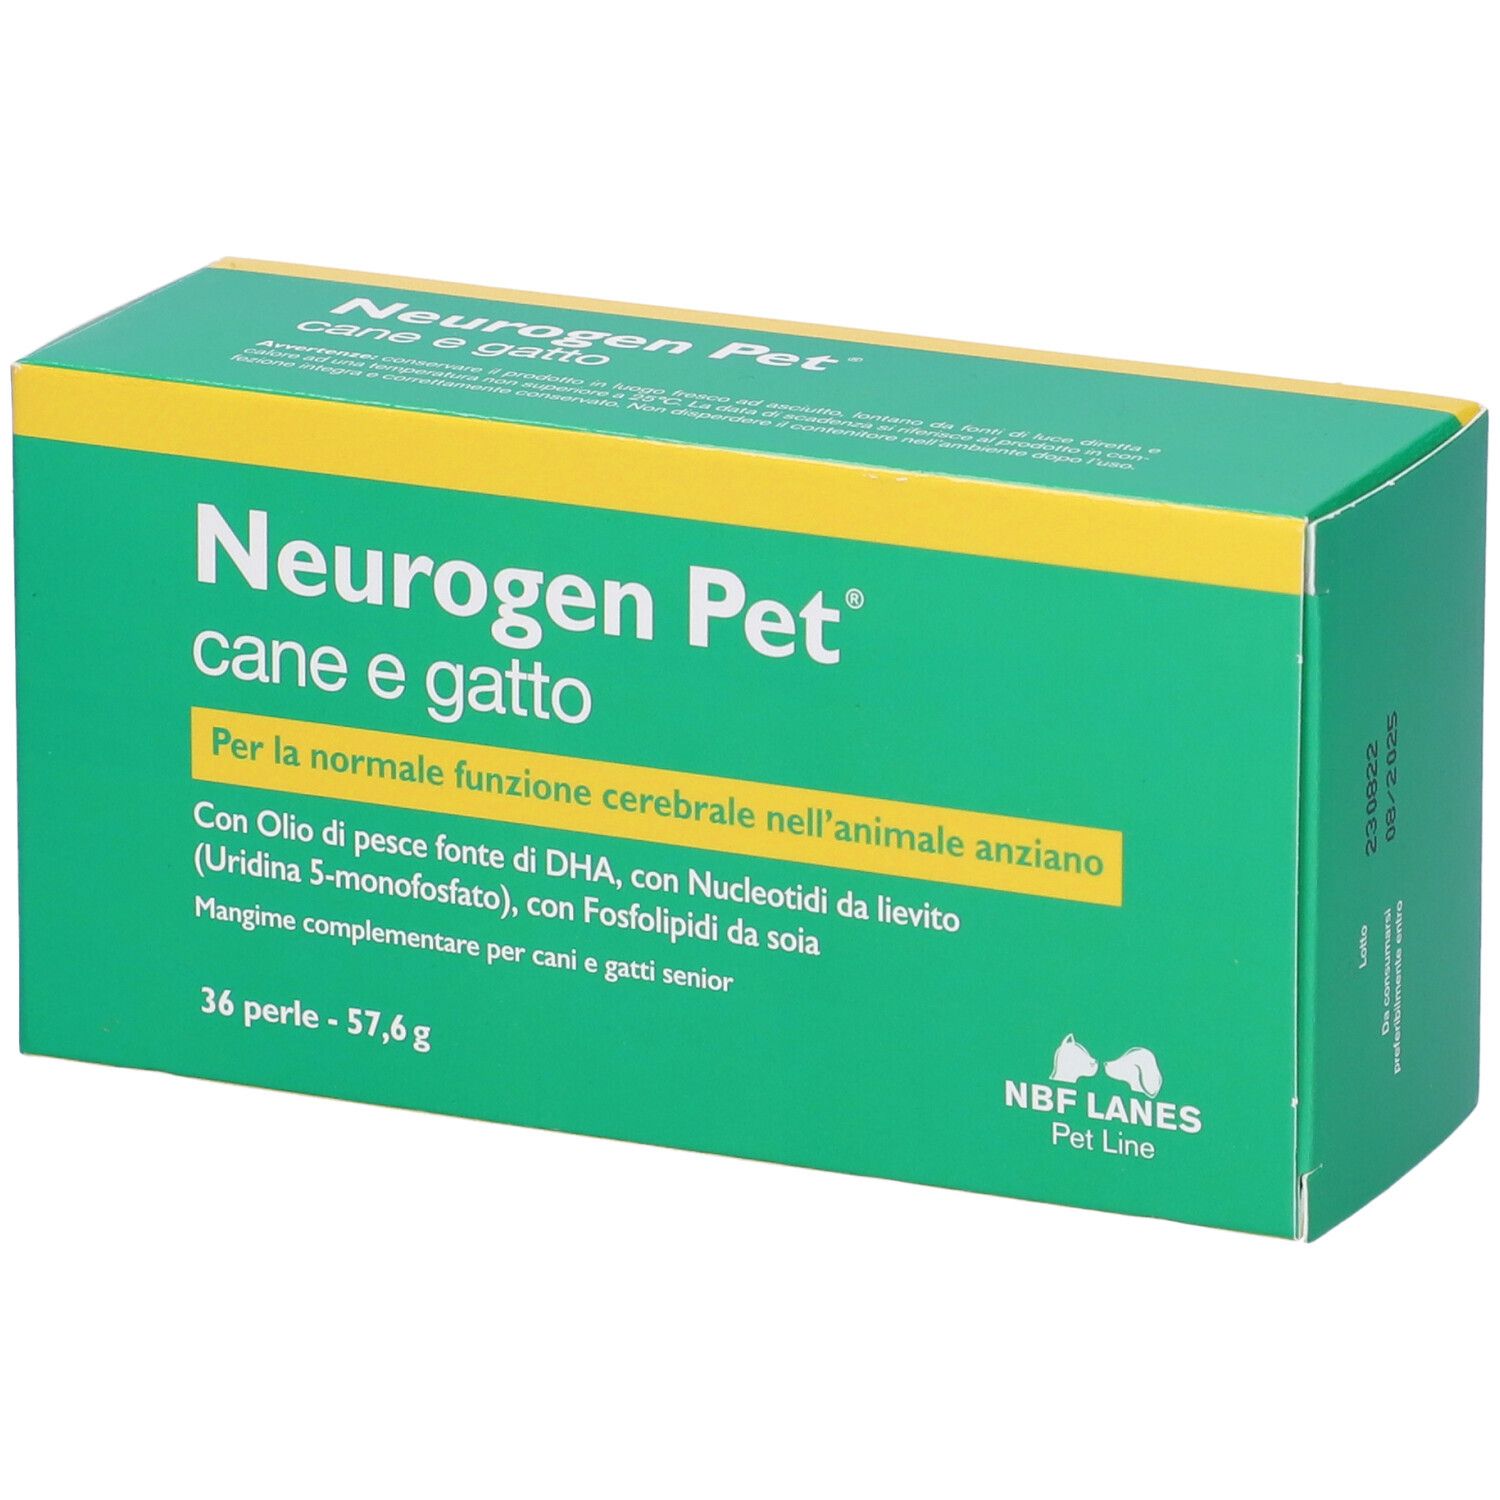 Image of Neurogen Pet